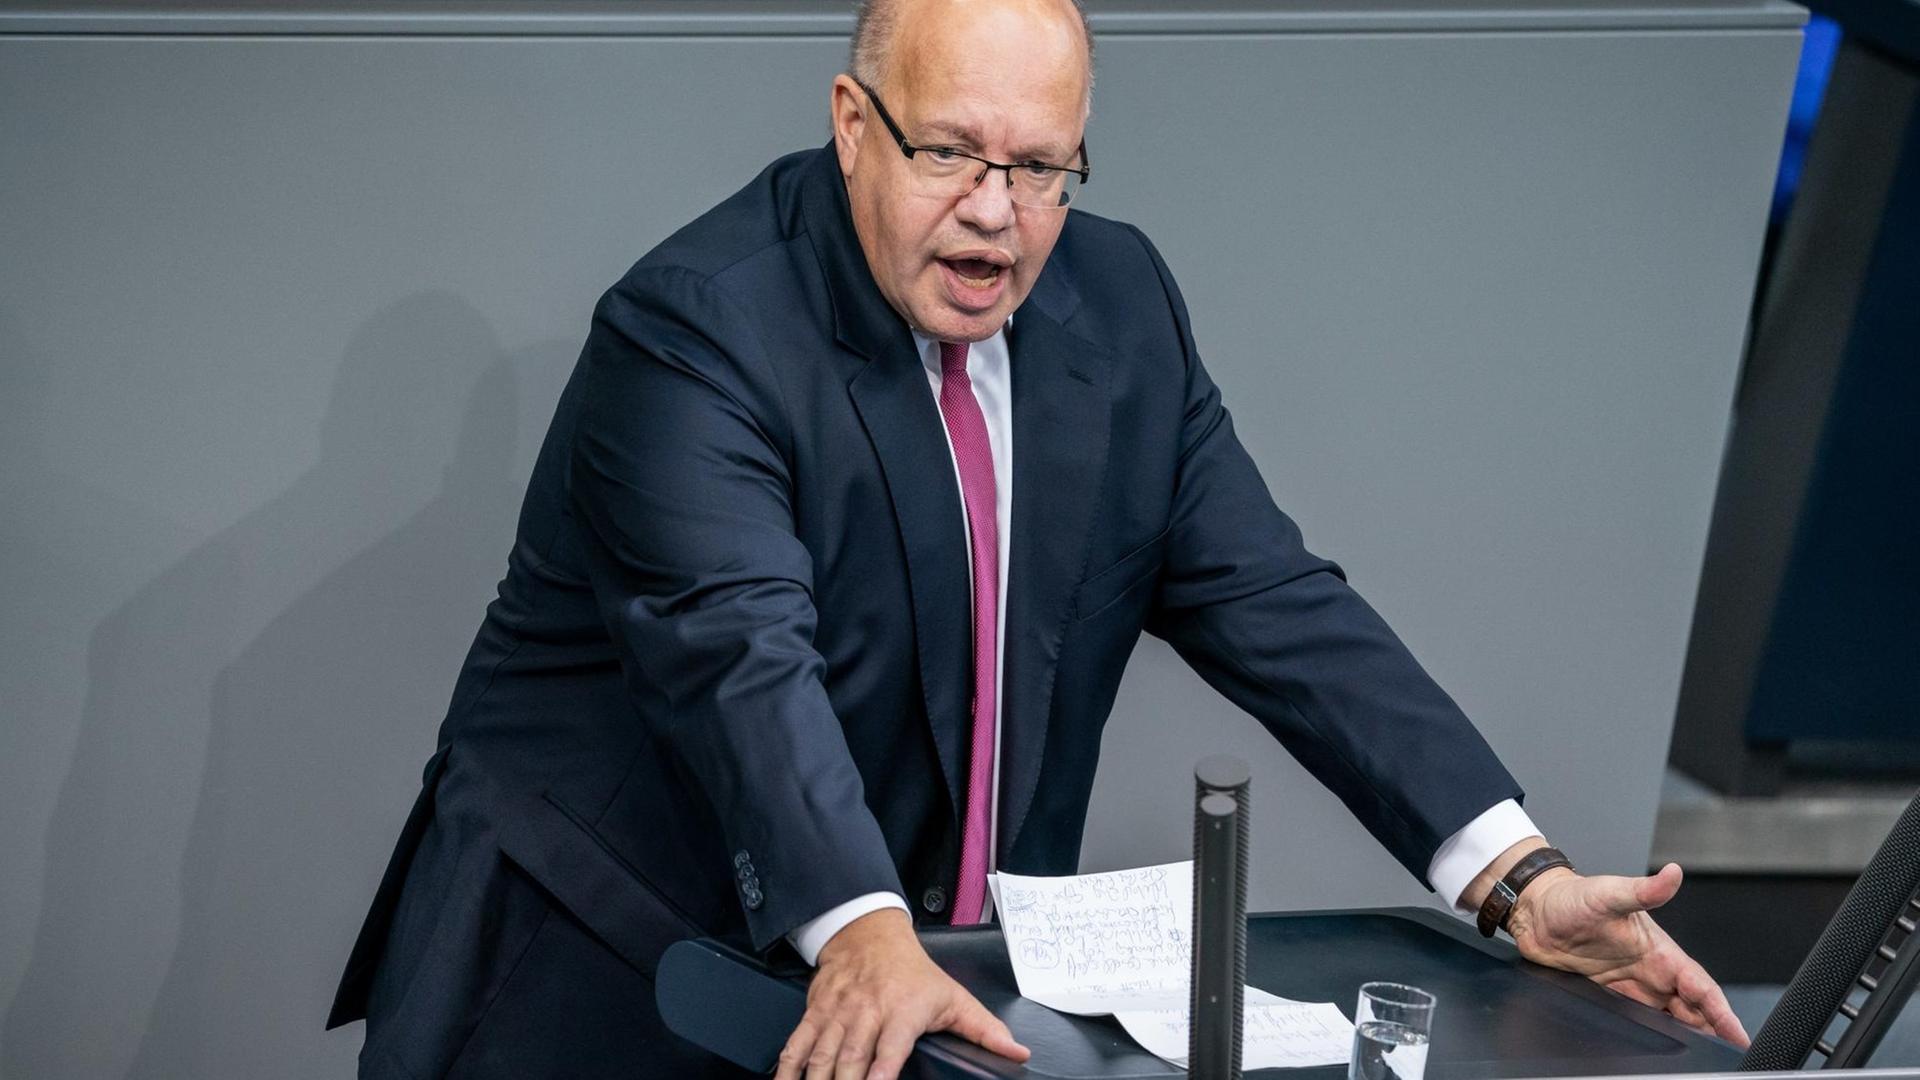 Peter Altmaier (CDU), Bundesminister für Wirtschaft und Energie, spricht im Bundestag währen der Haushaltsdebatte.